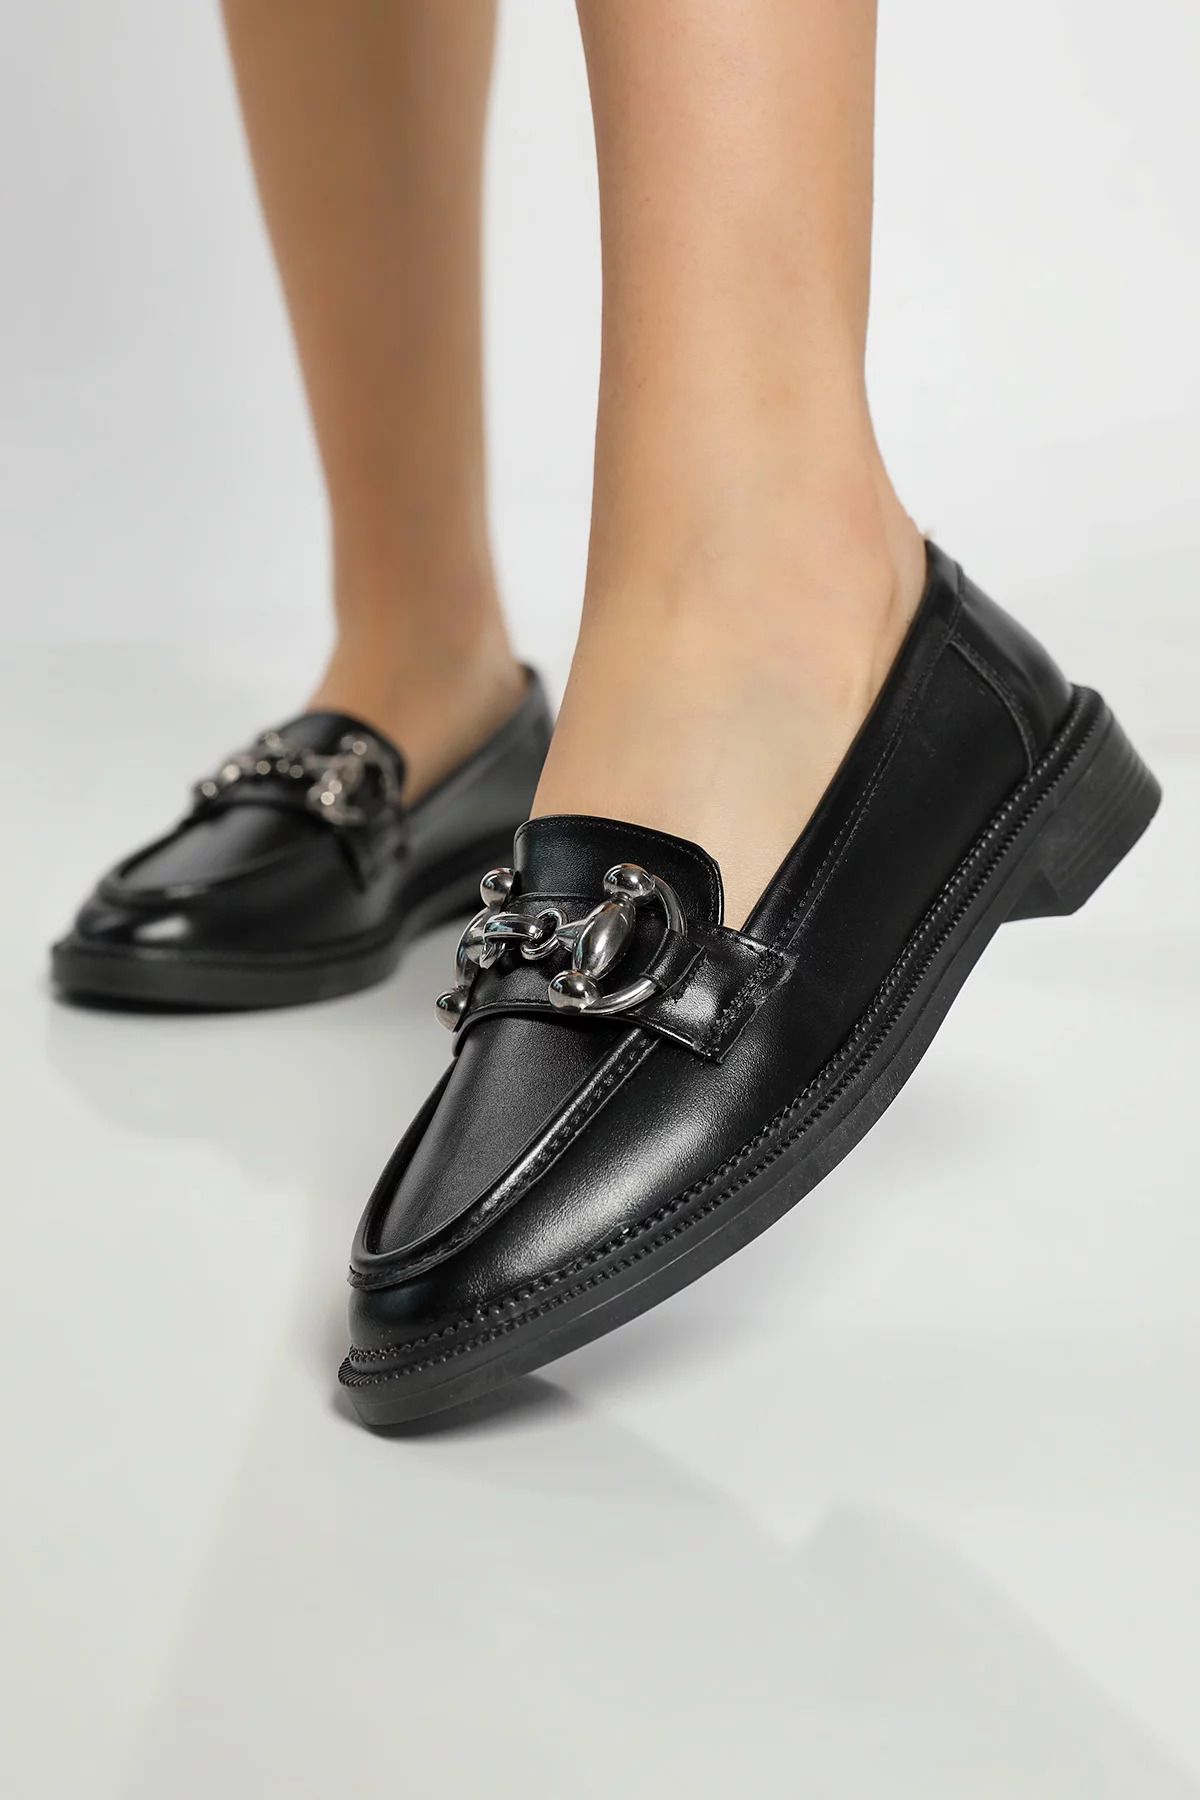 Julude Siyah Tarz Tokalı Kadın Günlük Ayakkabı